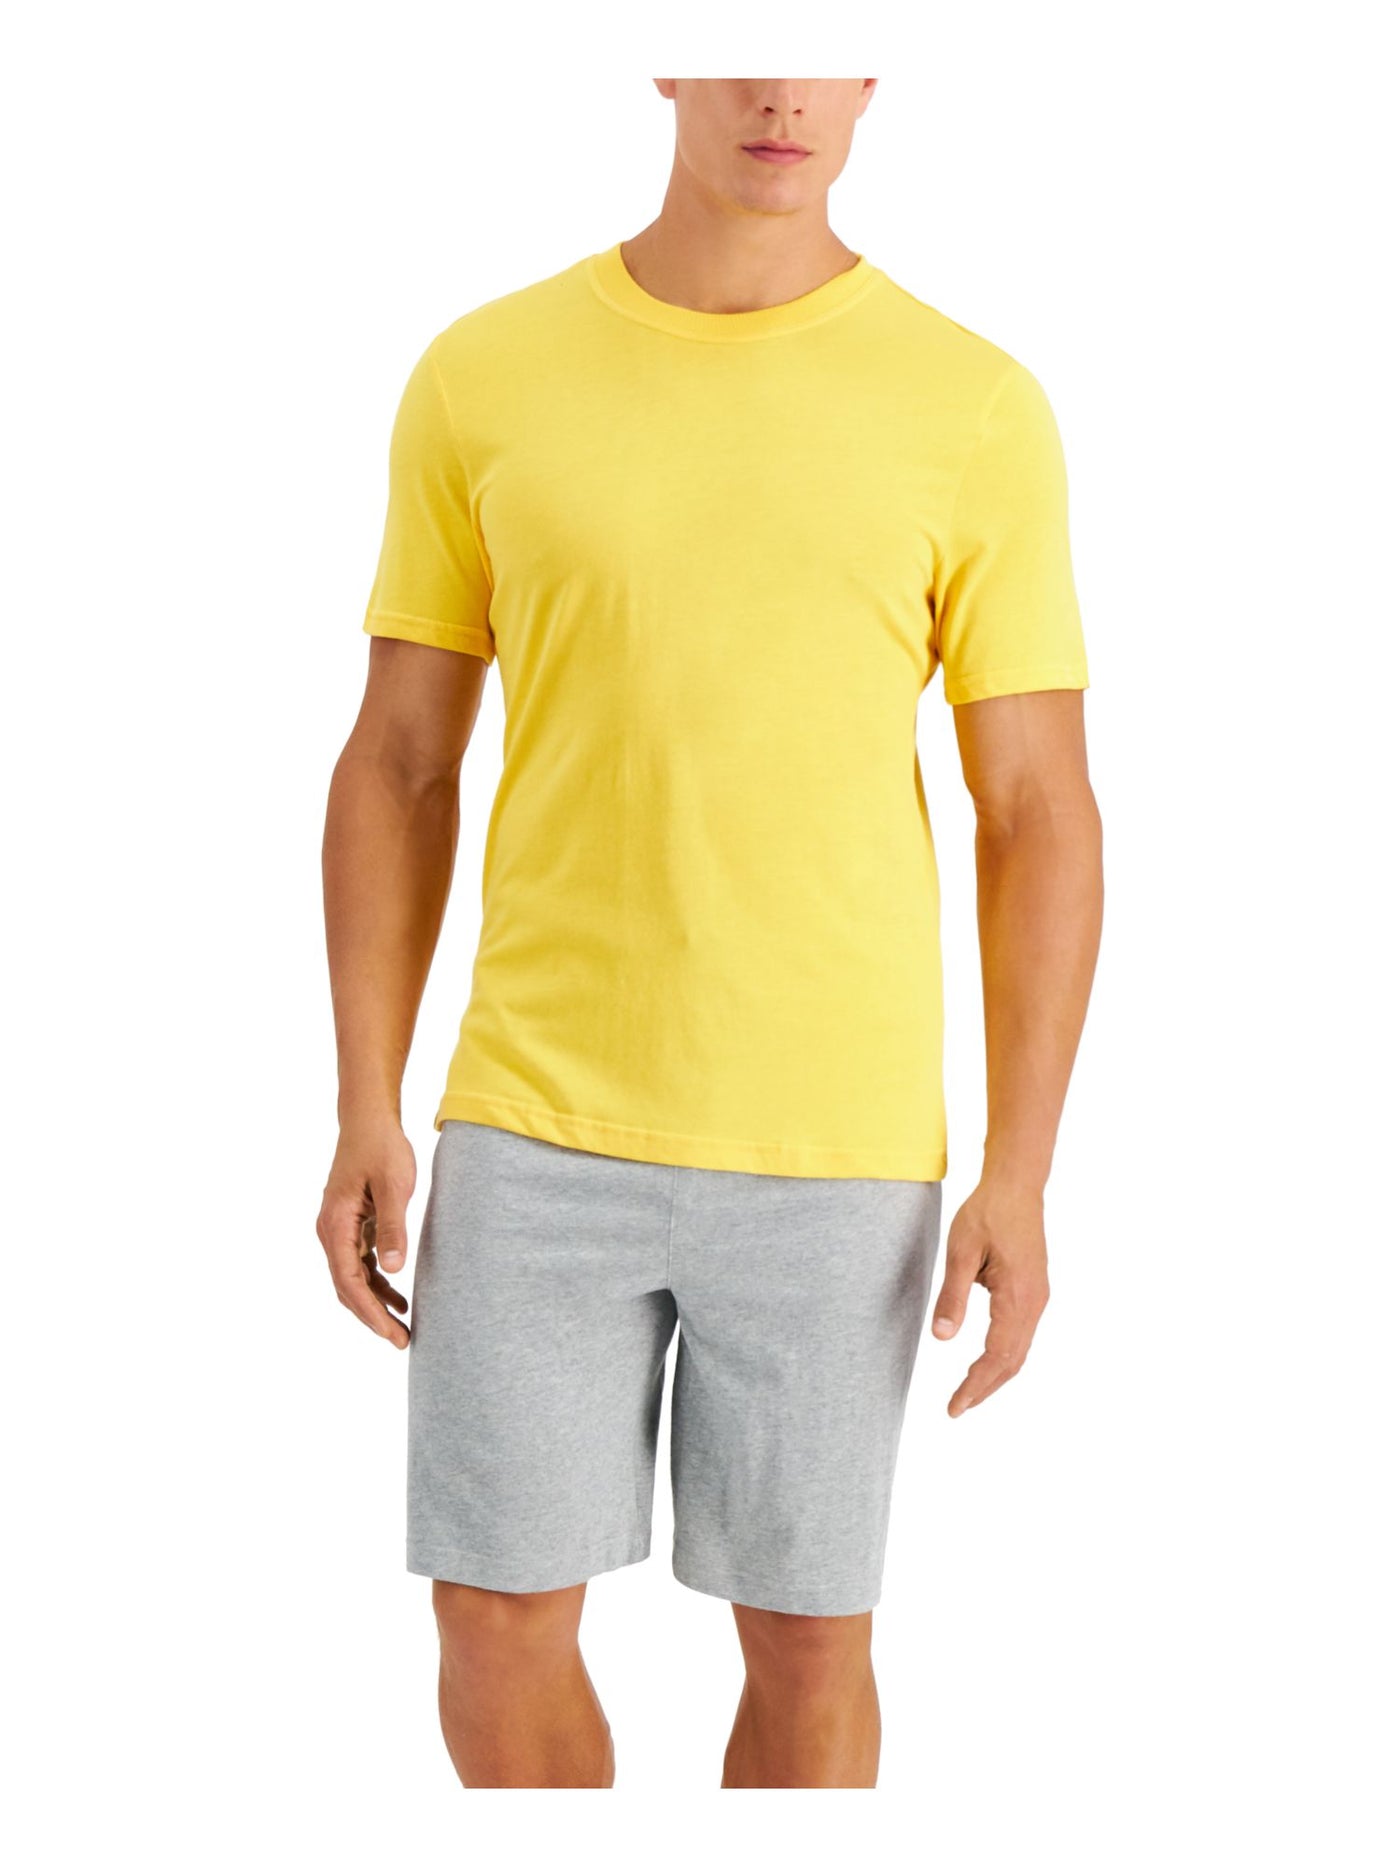 CLUBROOM Mens Yellow Drawstring Short Sleeve T-Shirt Top Shorts Pants Pajamas L